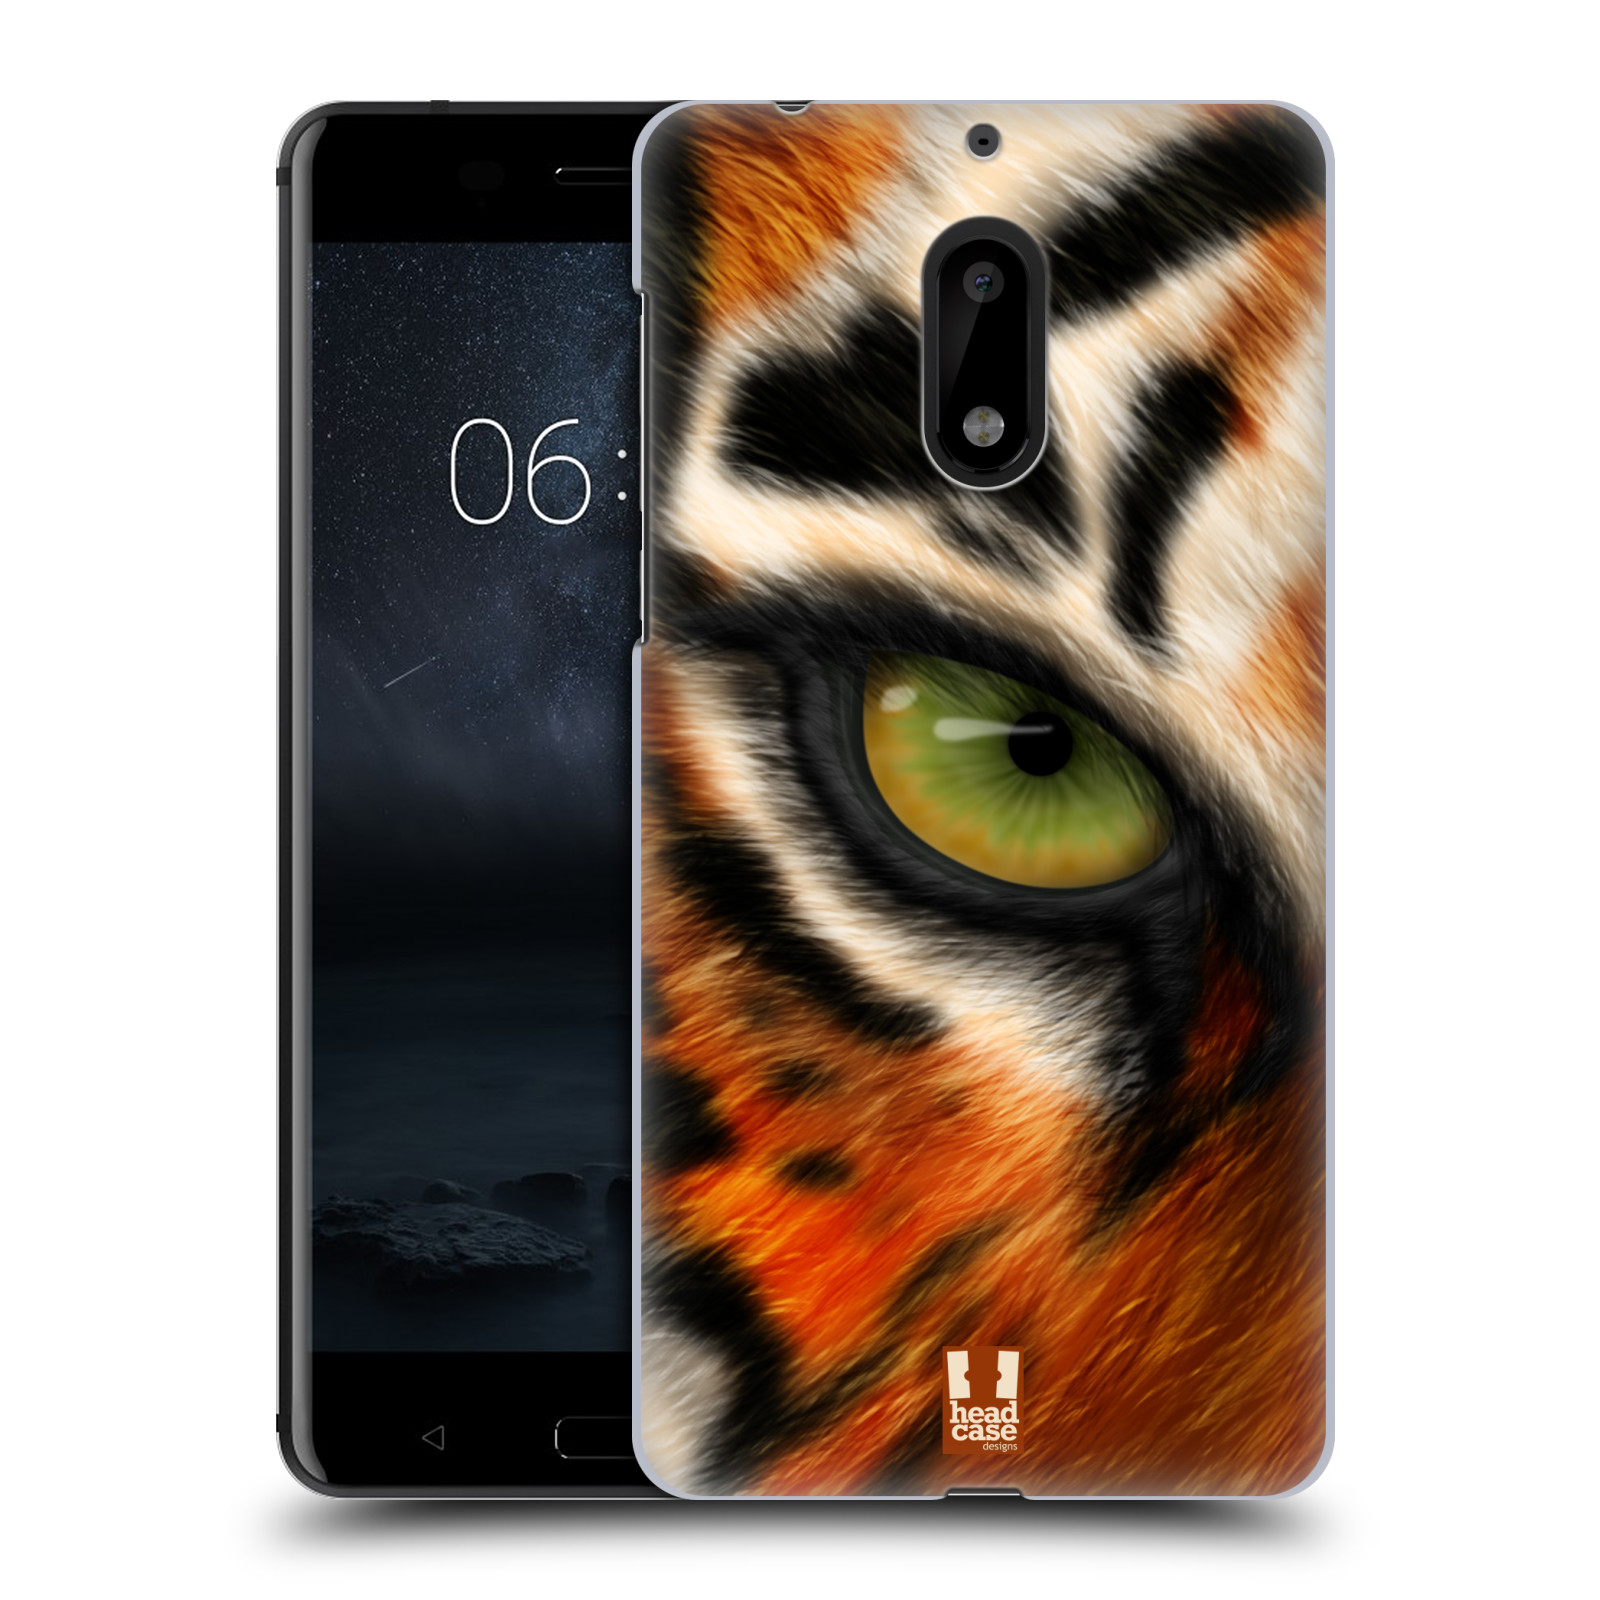 HEAD CASE plastový obal na mobil Nokia 6 vzor pohled zvířete oko tygr